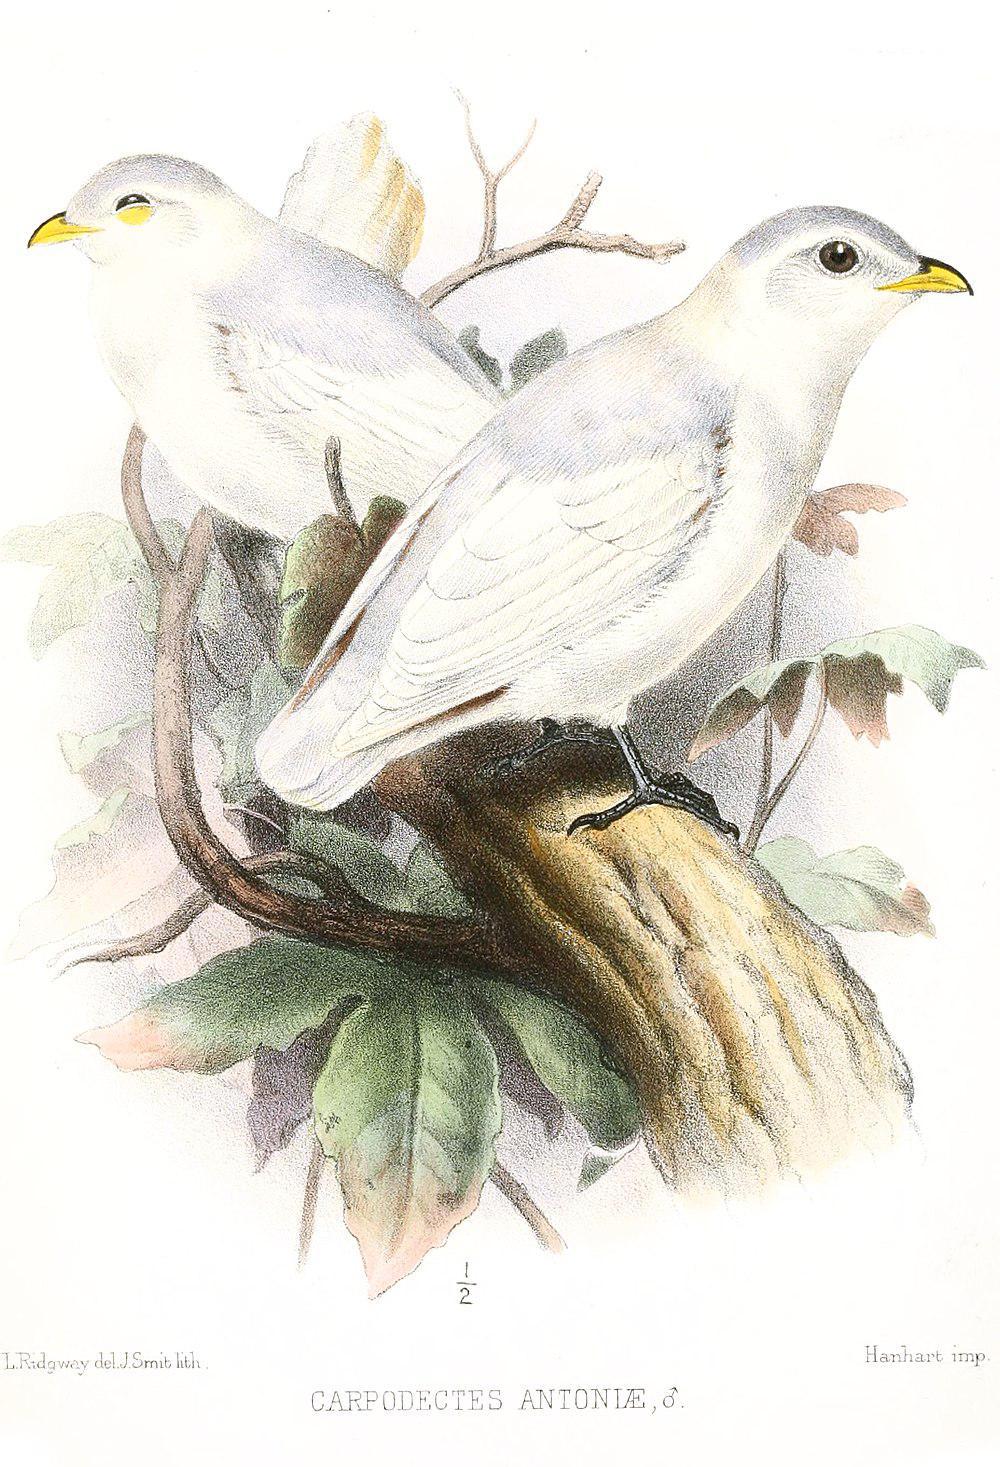 黄嘴白伞鸟 / Yellow-billed Cotinga / Carpodectes antoniae